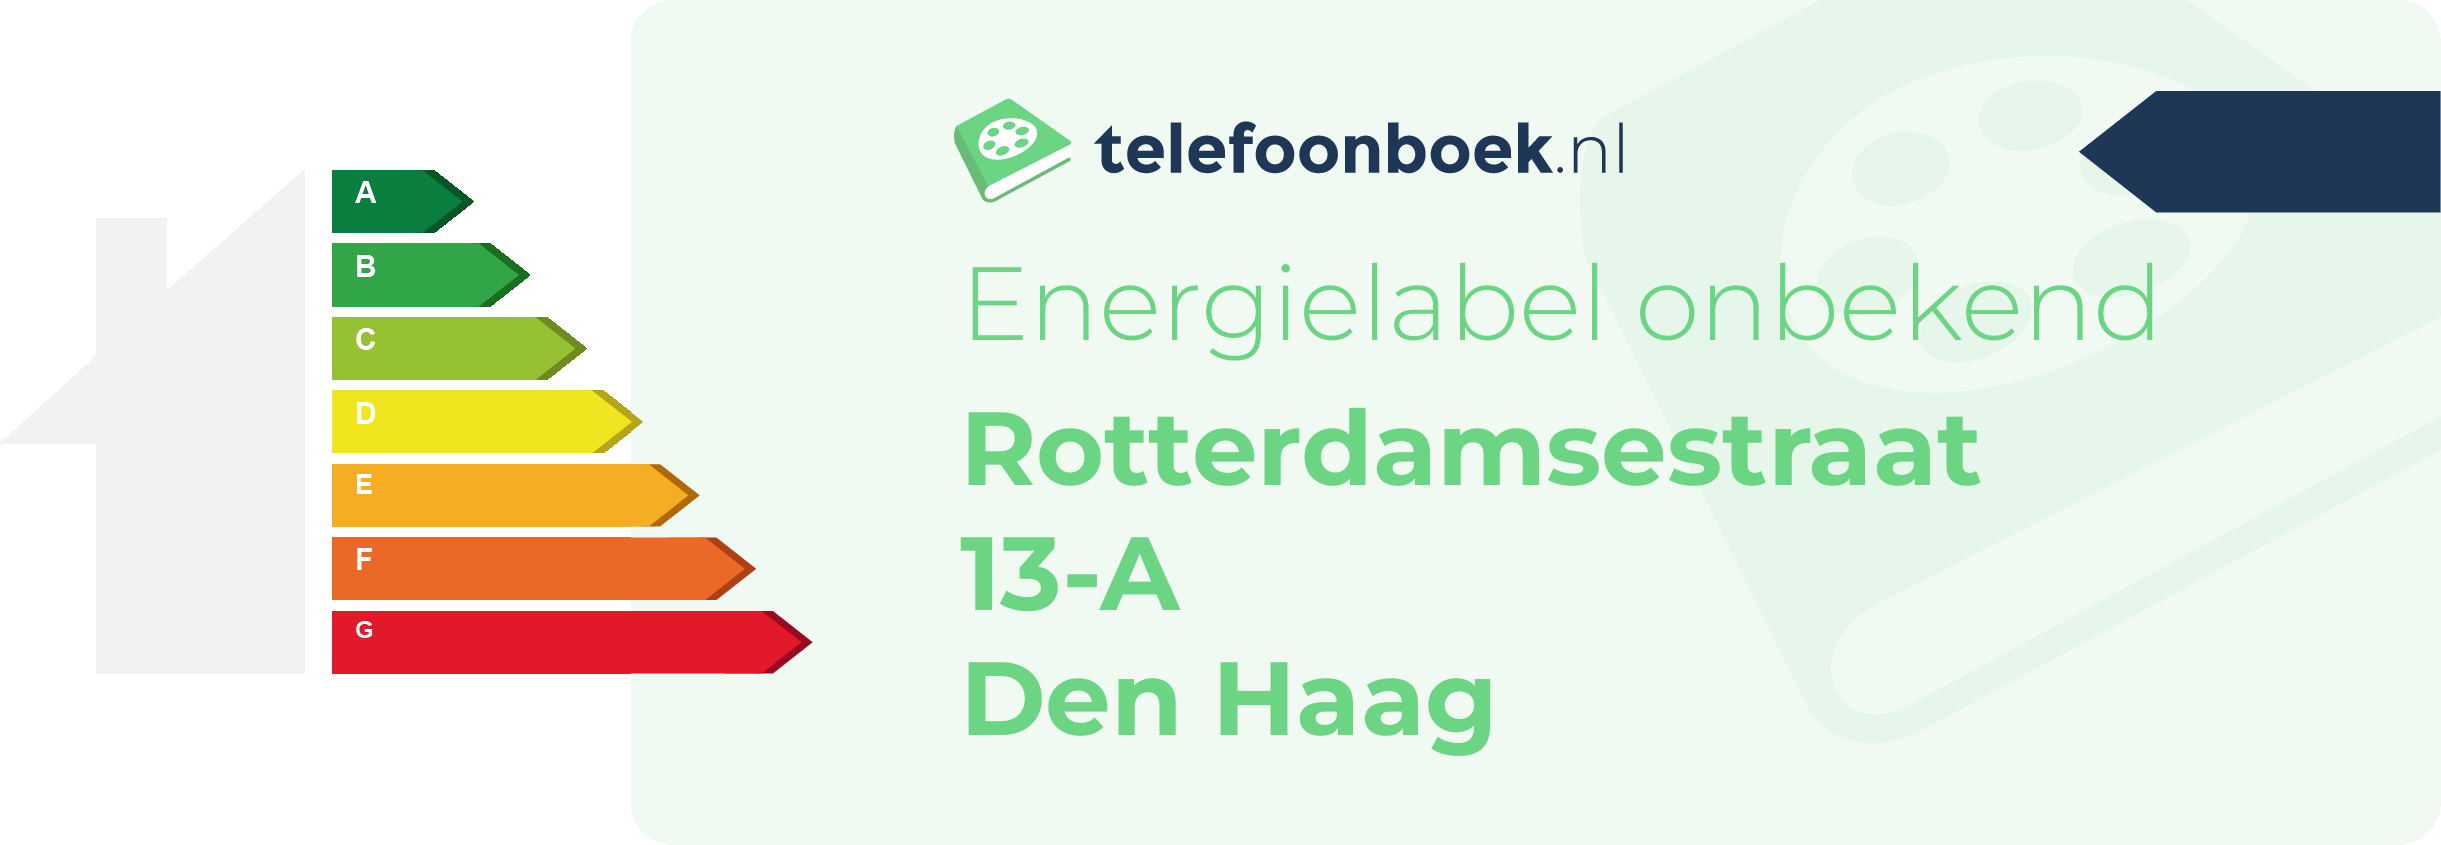 Energielabel Rotterdamsestraat 13-A Den Haag